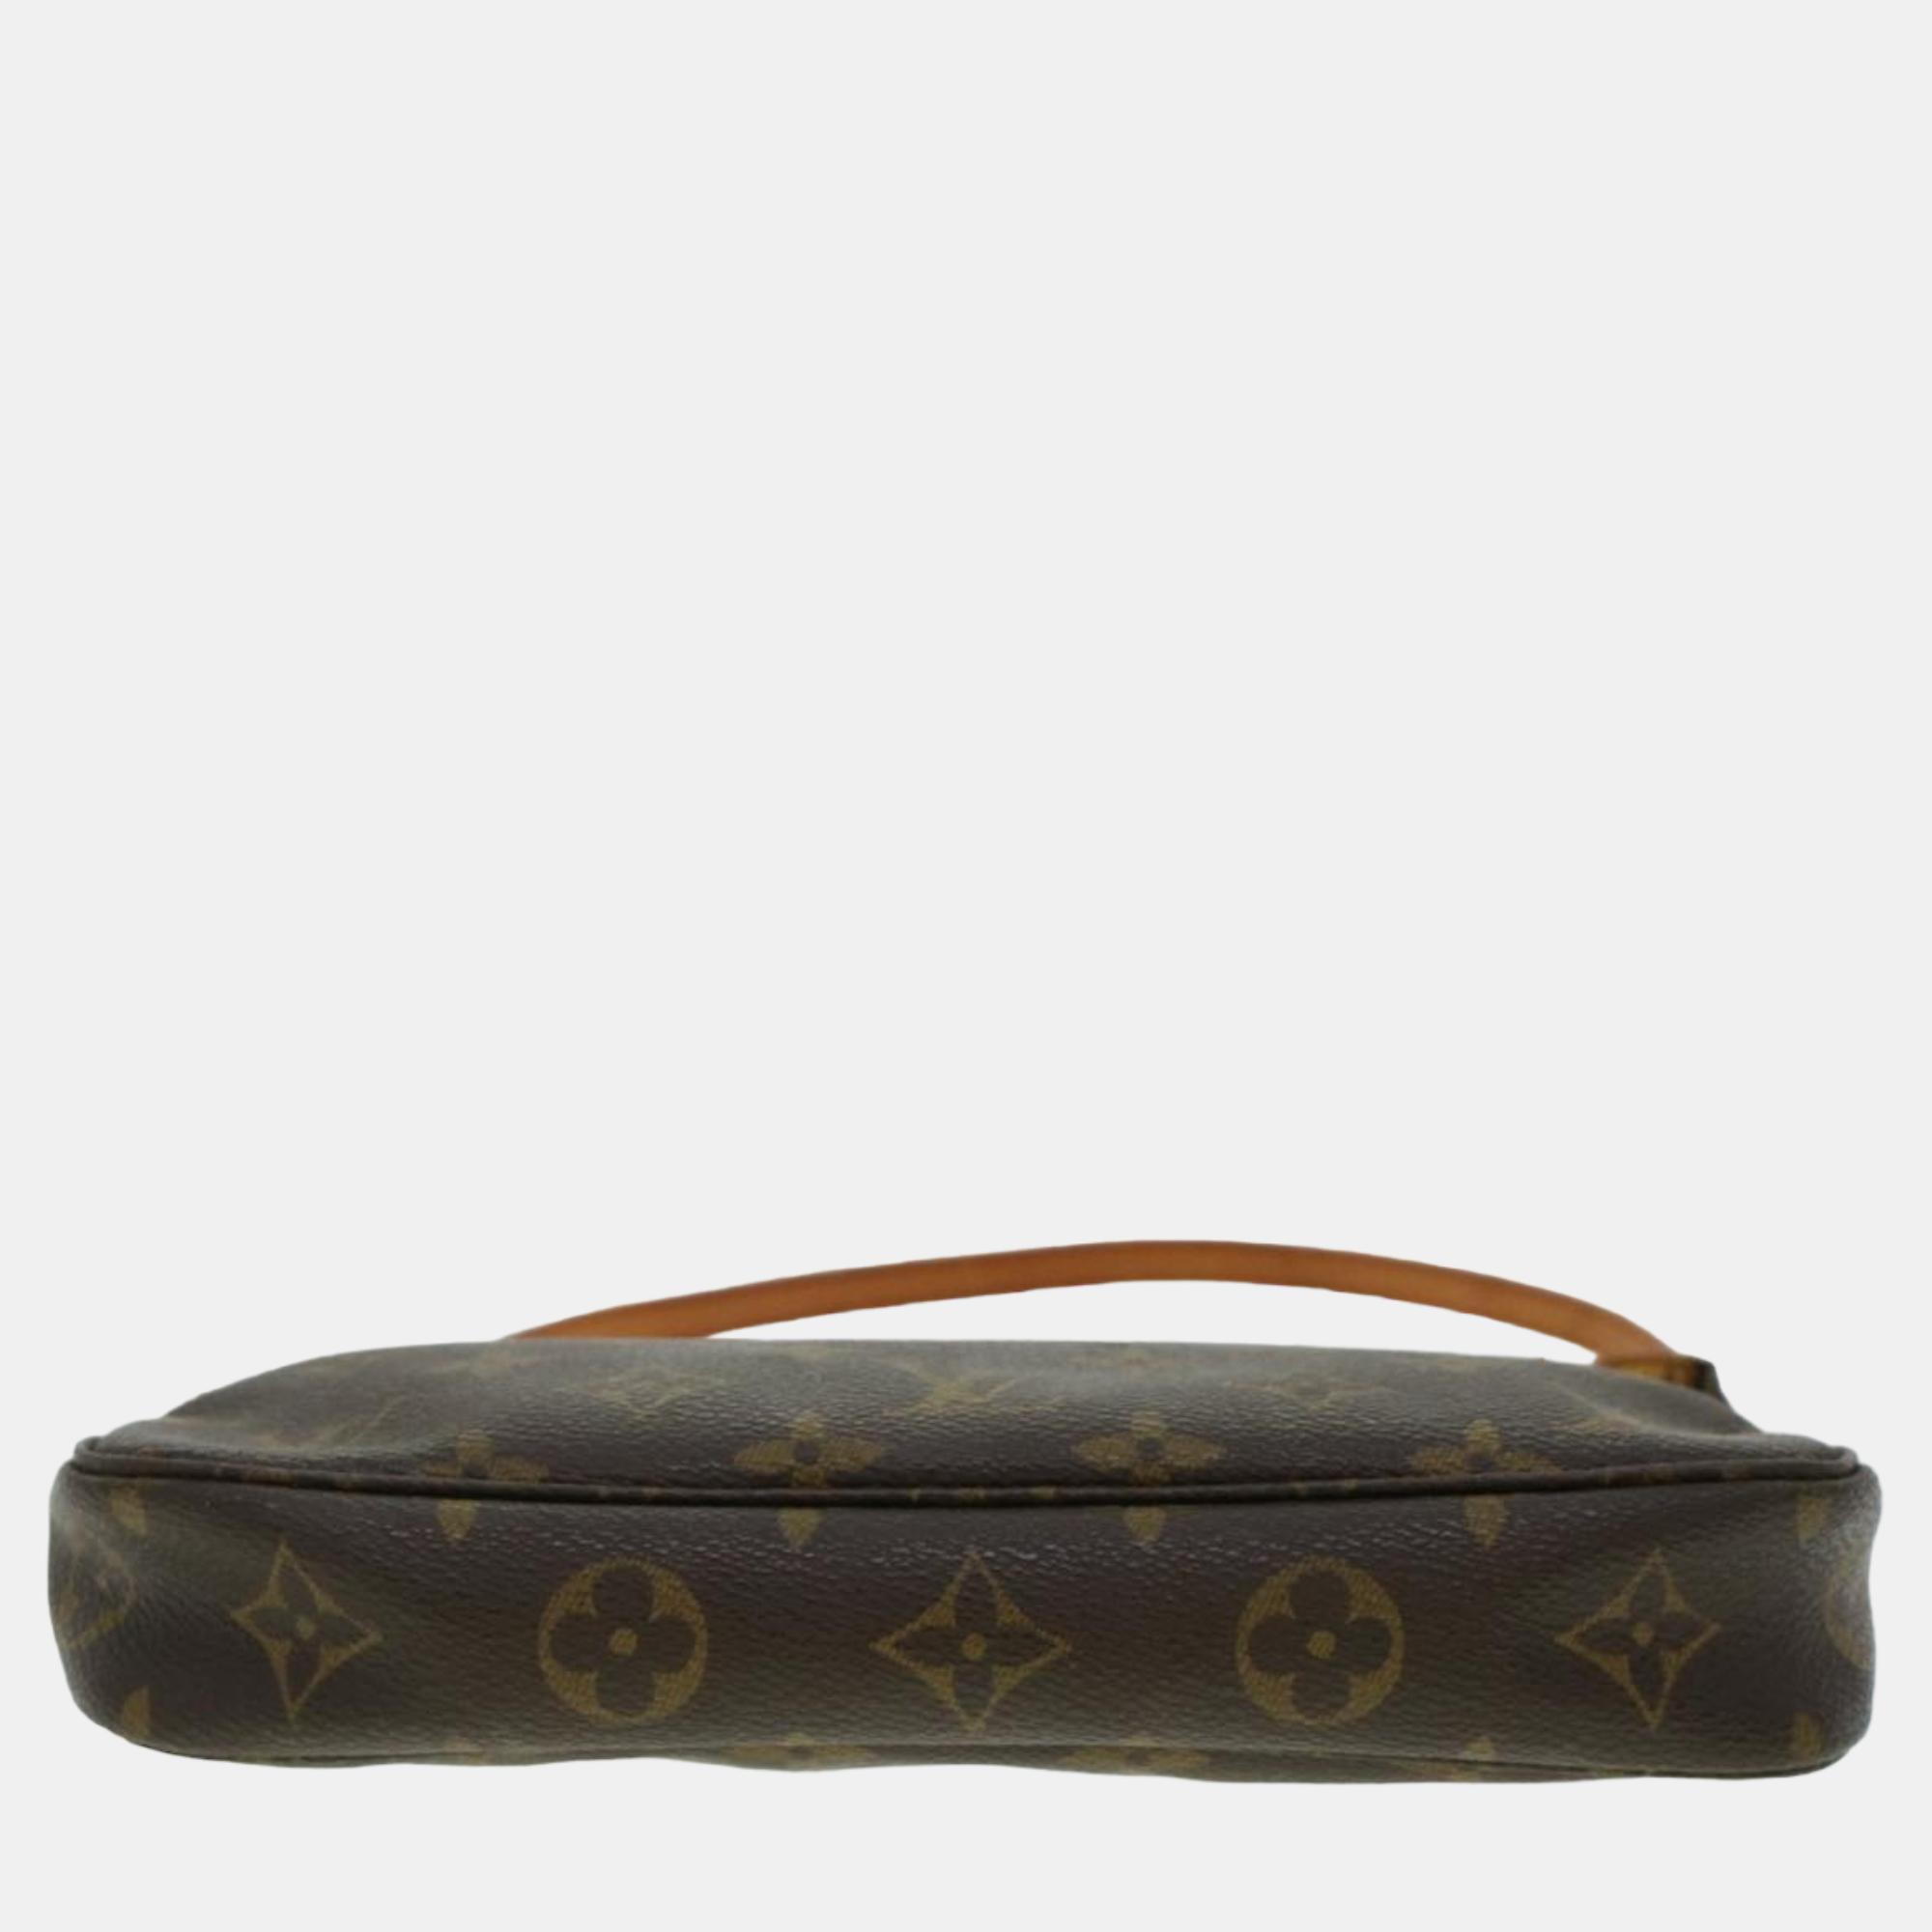 Louis Vuitton Brown Canvas Monogram Pochette Accessoires Clutch Bag